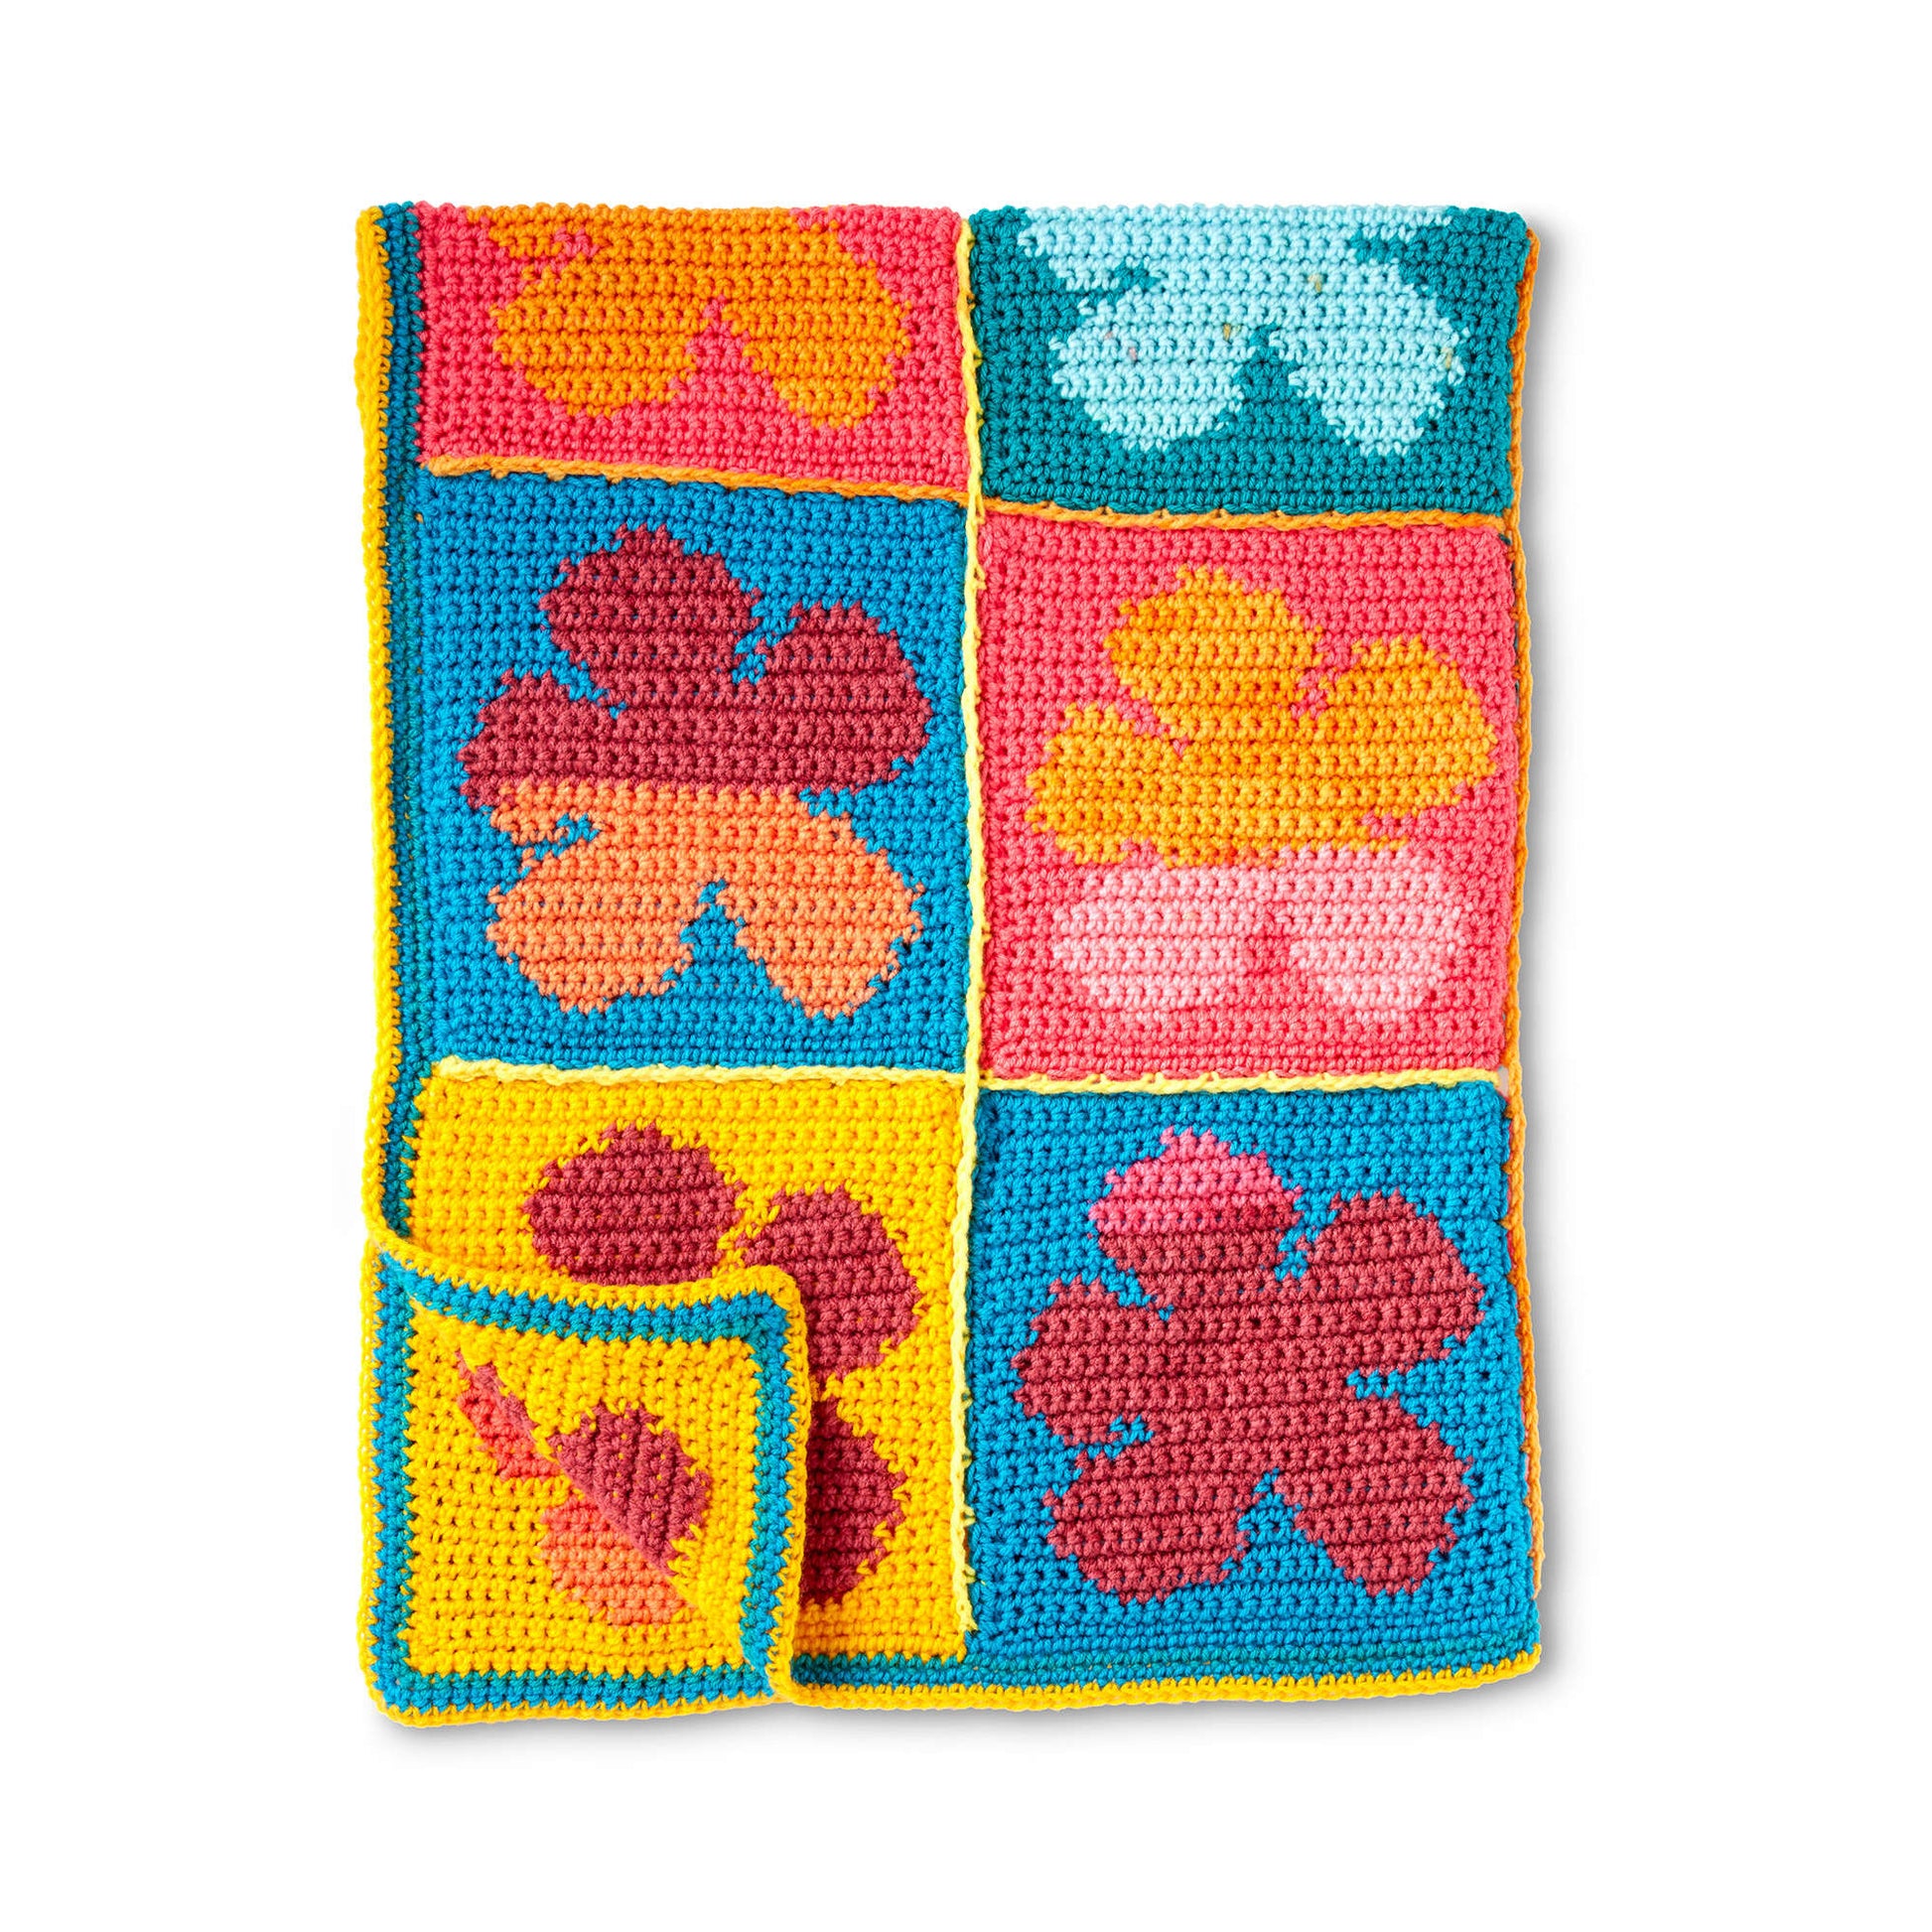 Bernat Pop Art Flowers Crochet Blanket Crochet Blanket made in Bernat Pop! yarn